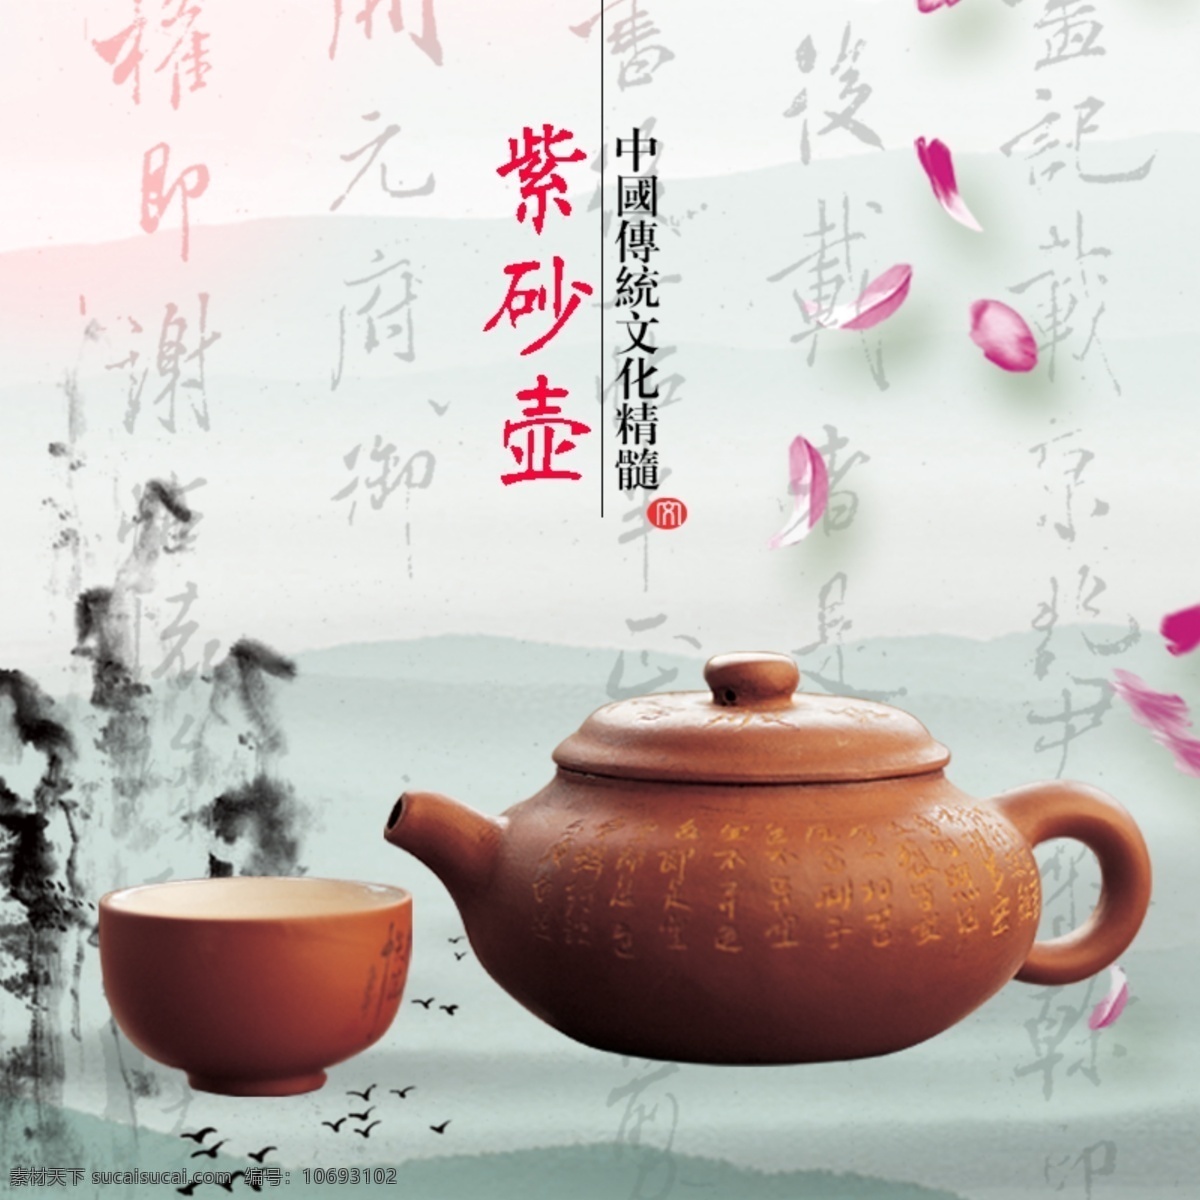 紫砂壶 茶壶 主 图 飘飞的花 山水墨画 书法字 中国传统文化 中国风